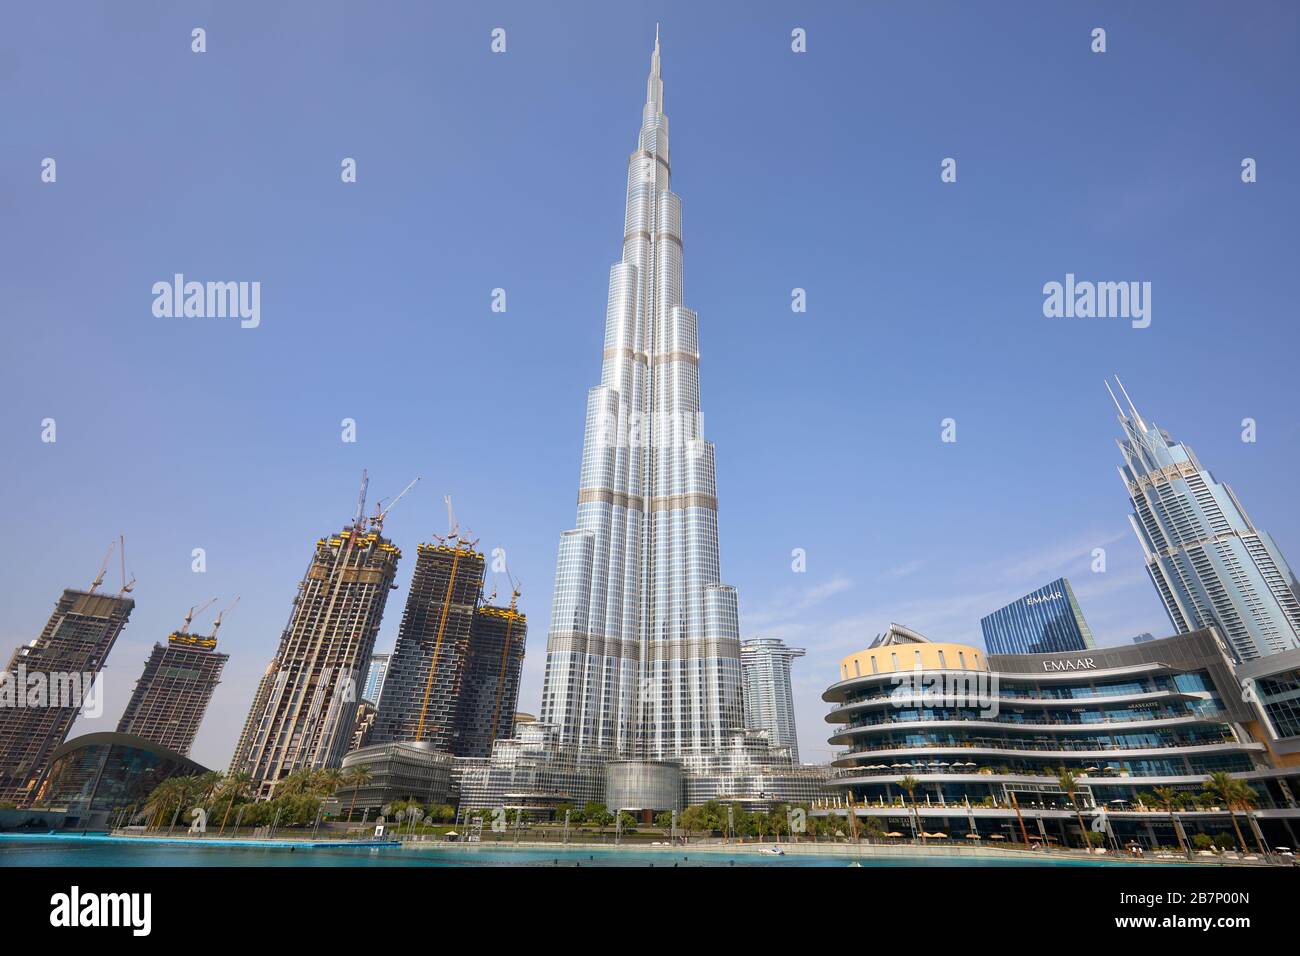 DUBAI, VEREINIGTE ARABISCHE EMIRATE - 19. NOVEMBER 2019: Burj Khalifa Wolkenkratzer und Dubai Mall an einem klaren sonnigen Tag Stockfoto